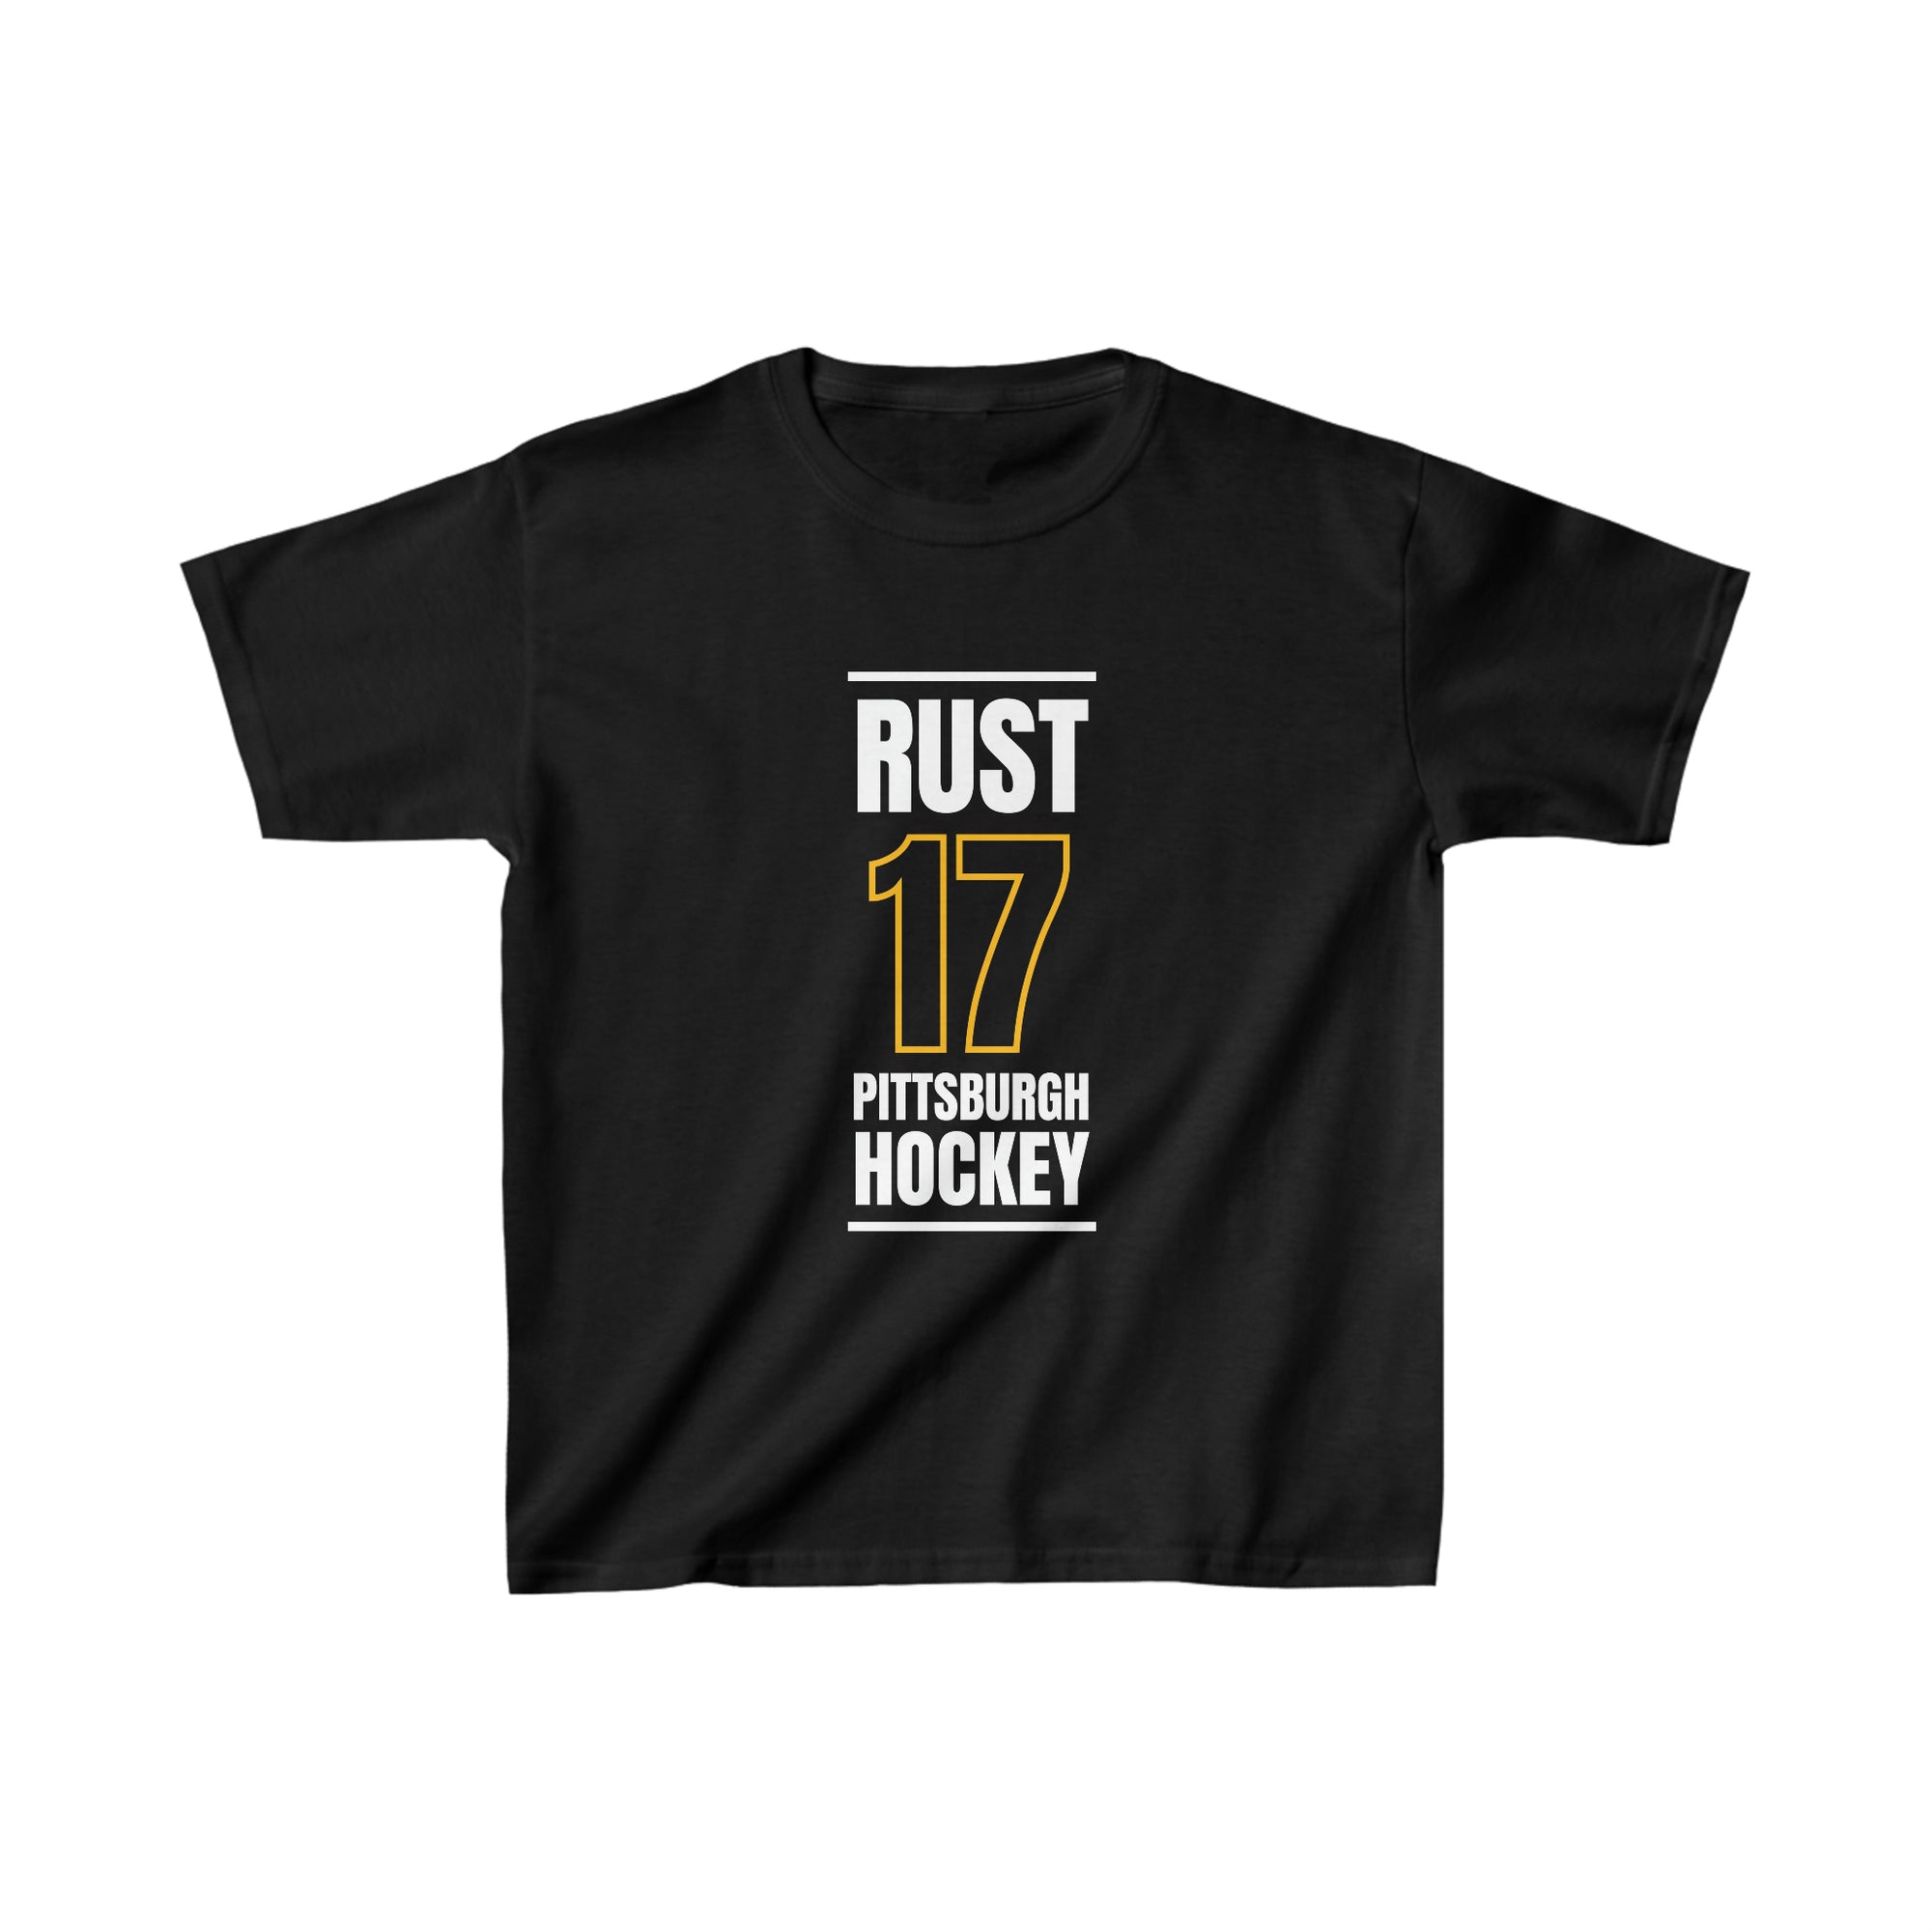 Rust 17 Pittsburgh Hockey Black Vertical Design Kids Tee